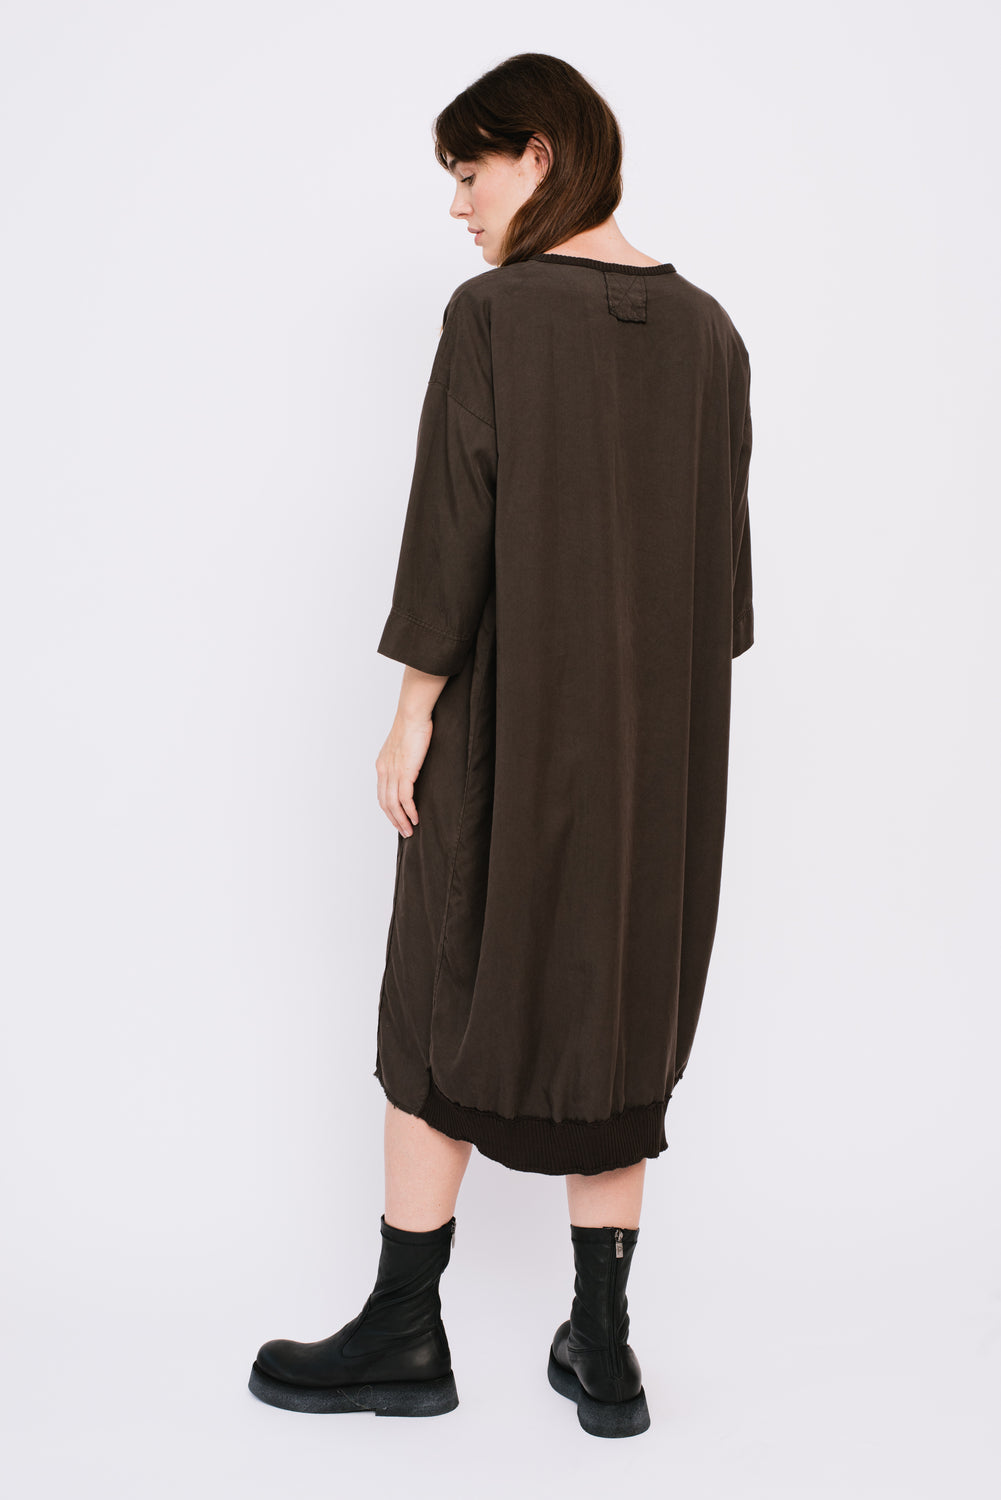 VASCO Dress, Ebano (Dark Brown)